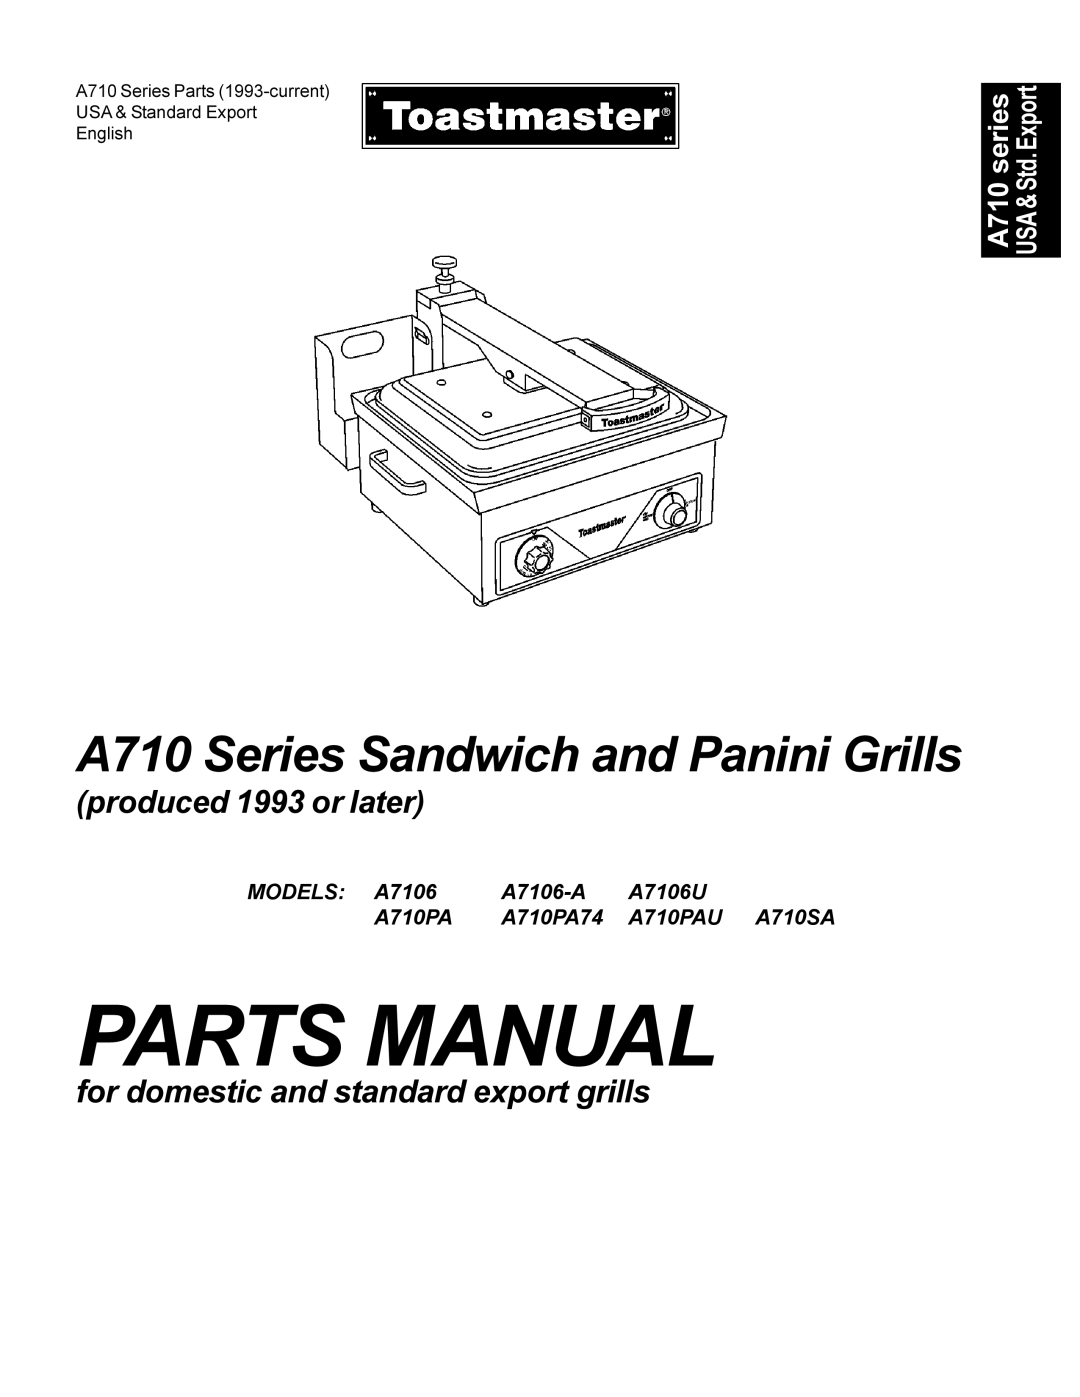 Toastmaster A710U manual MODELS A7106, A7106U, A710PA74, A710PAU, A710SA, A7106-A 